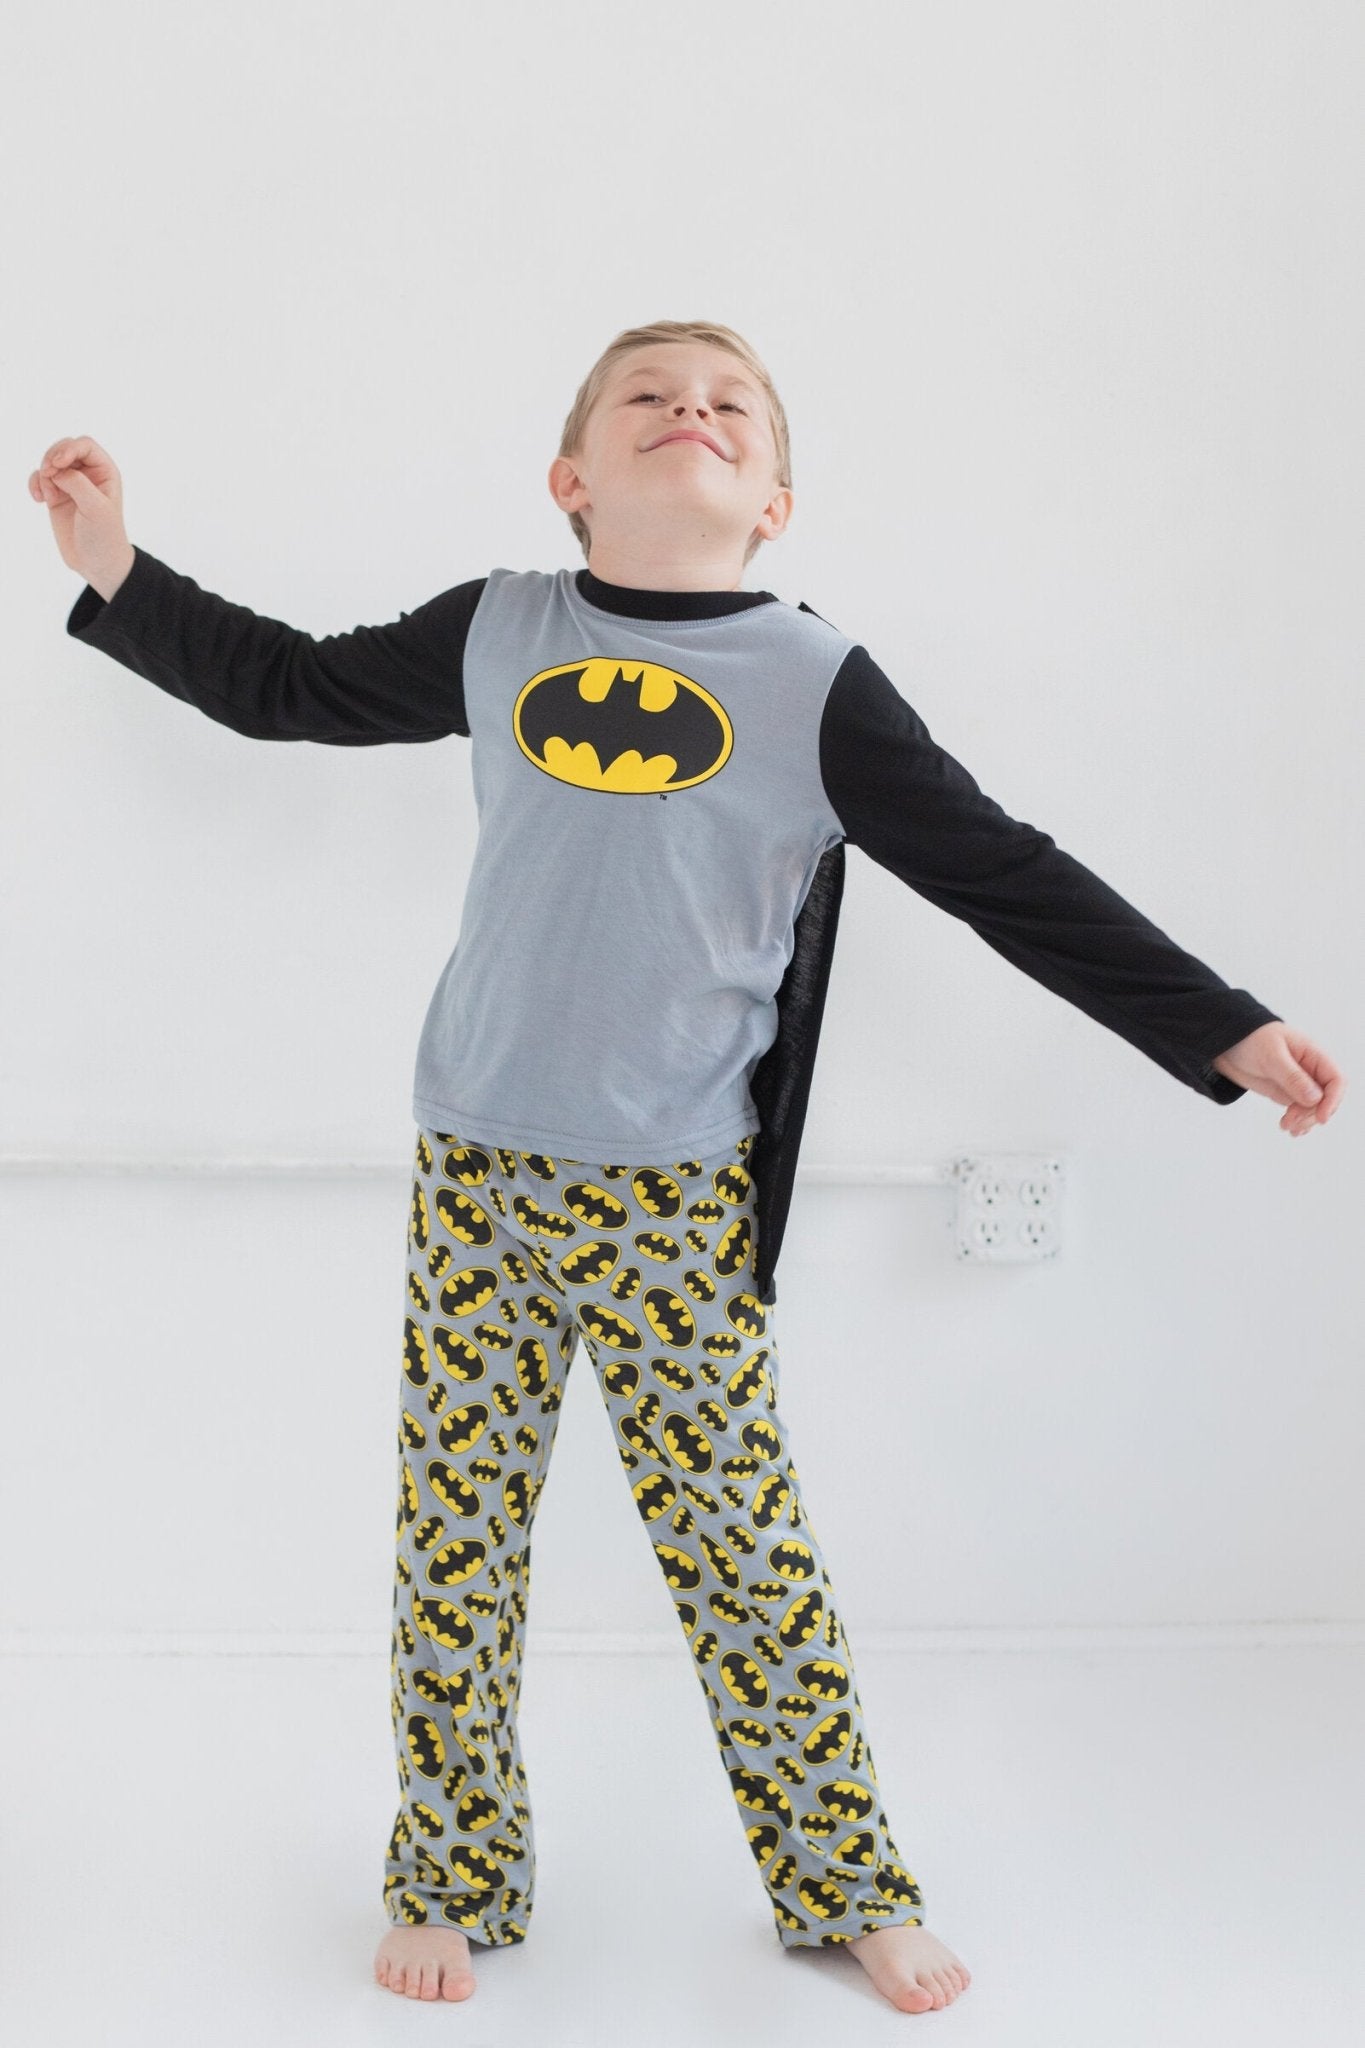 DC Comics Justice League Batman Pullover Pajama Shirt and Pants Sleep Set - imagikids